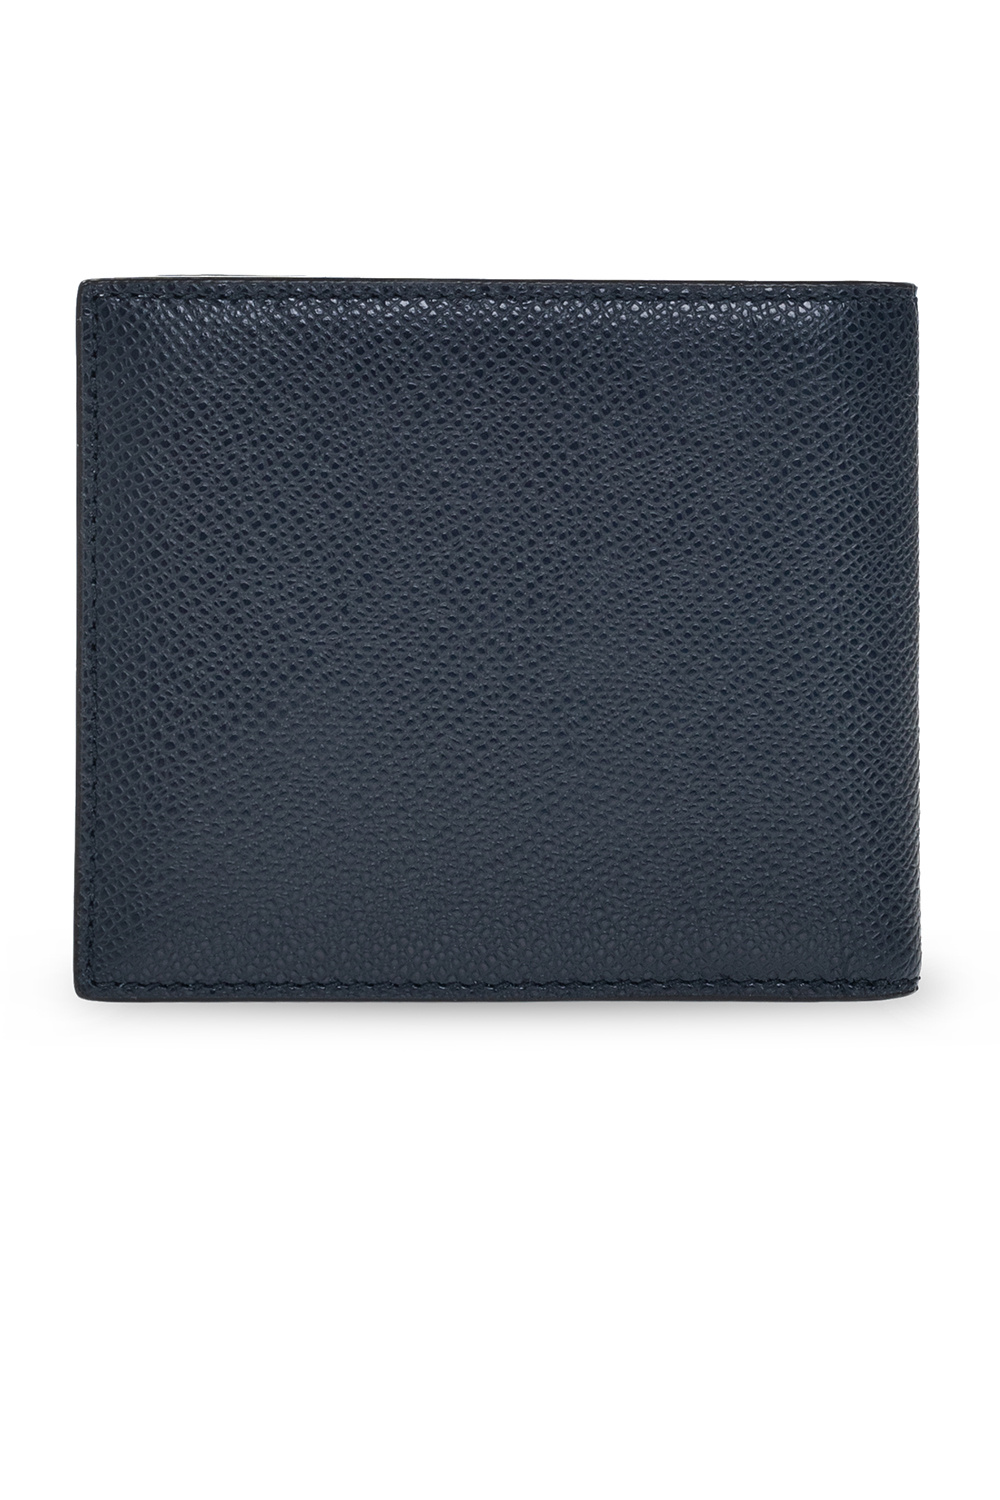 Bally Bi-fold wallet